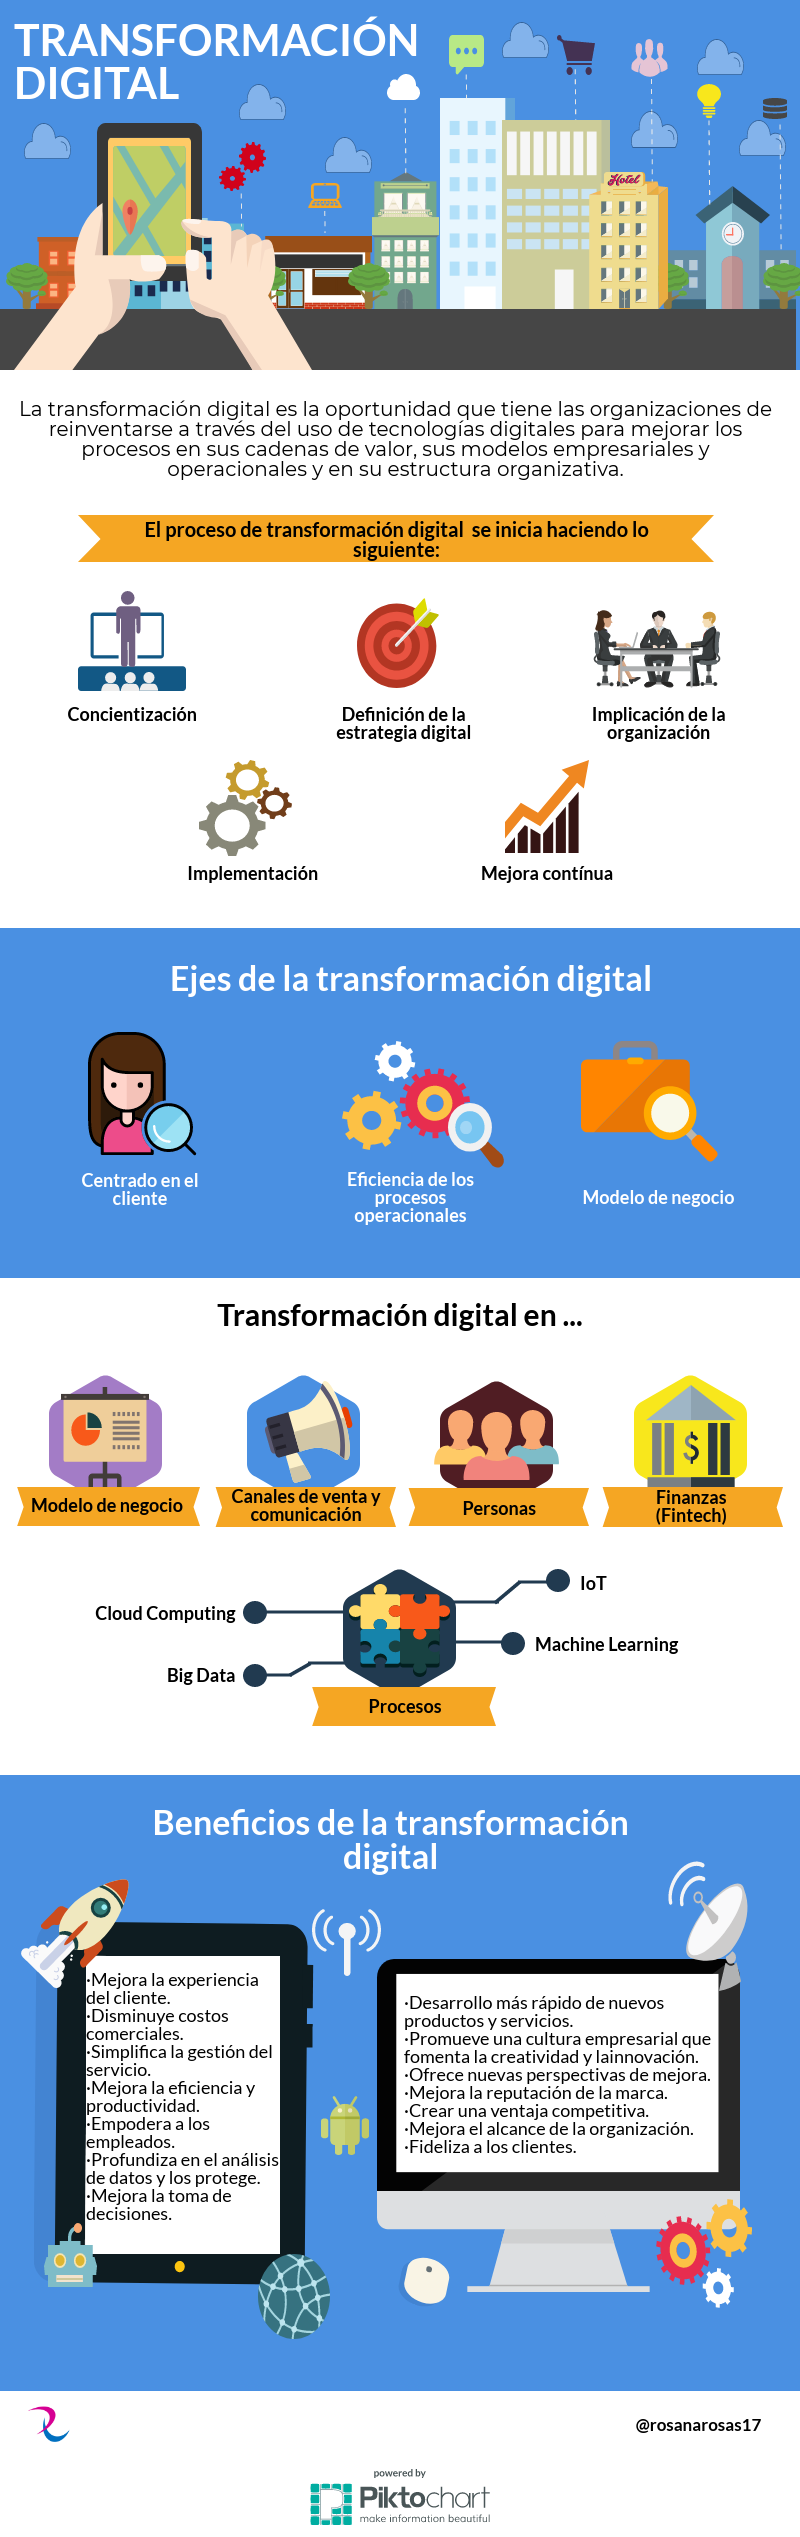 Infografia - Transformación digital en las empresas #infografia #infographic - TICs y Formación